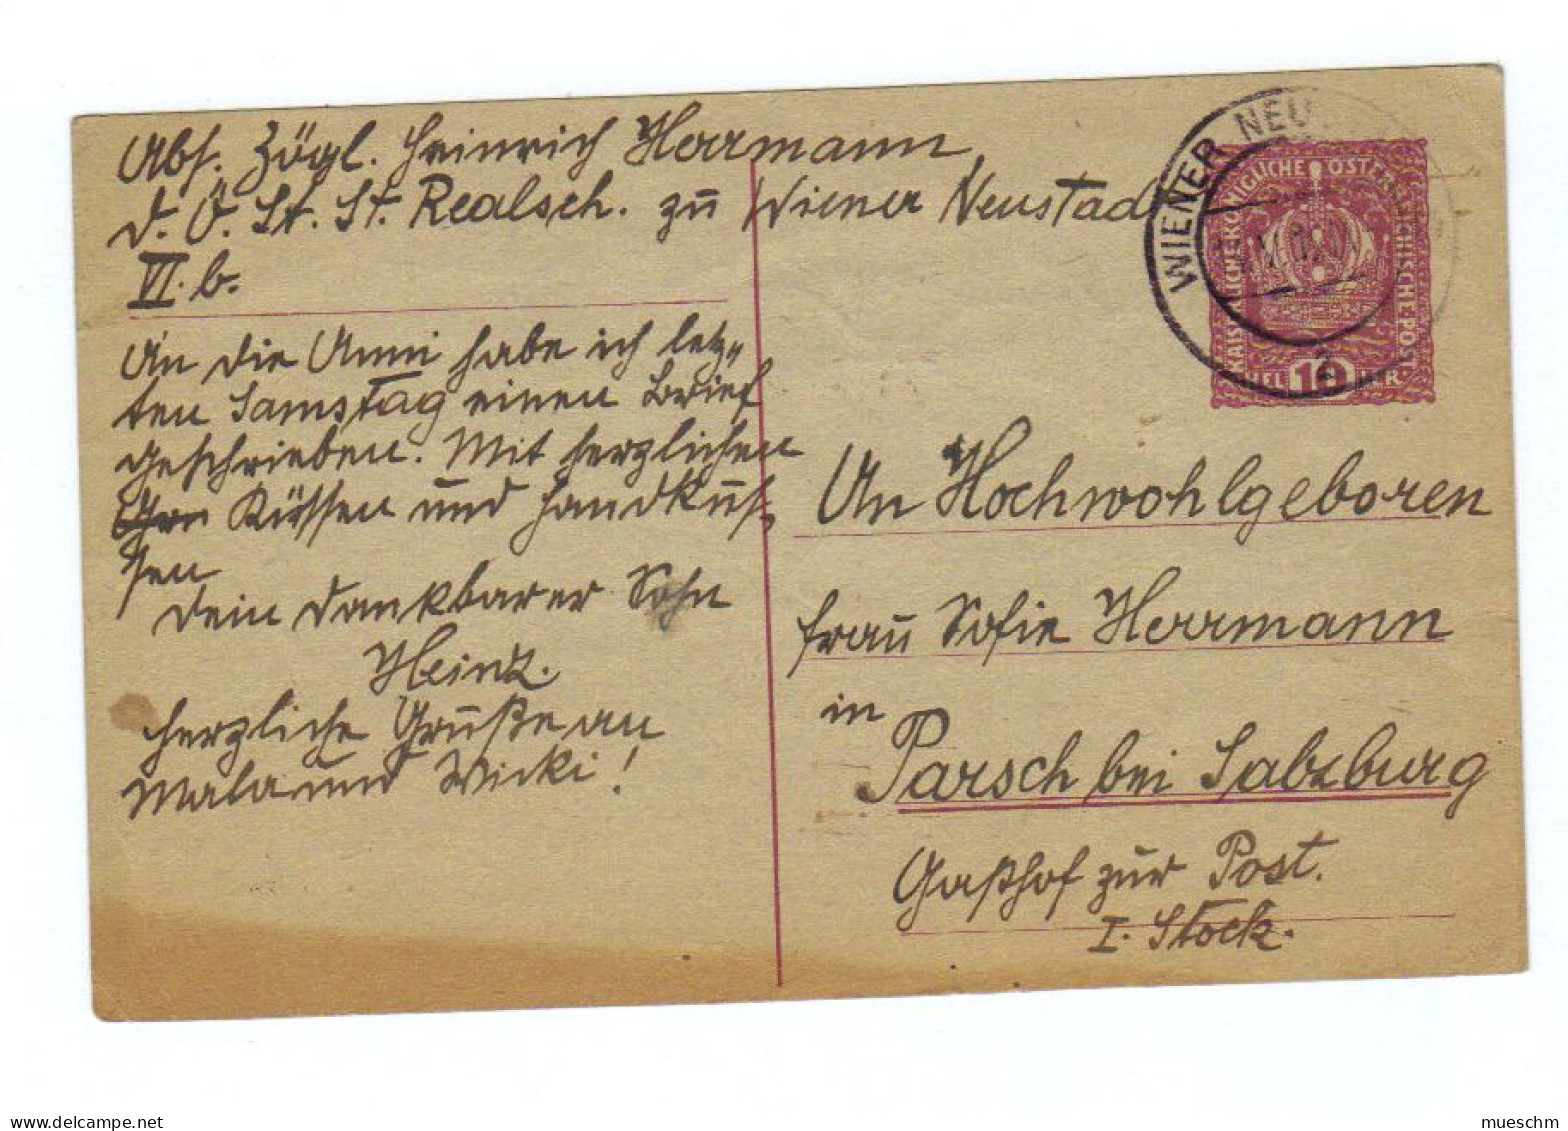 Österreich, 1919, Postkarte Mit Eingedr. 10Heller/Kaiserkrone, Stempel Wiener Neustadt (12380E) - Postkarten